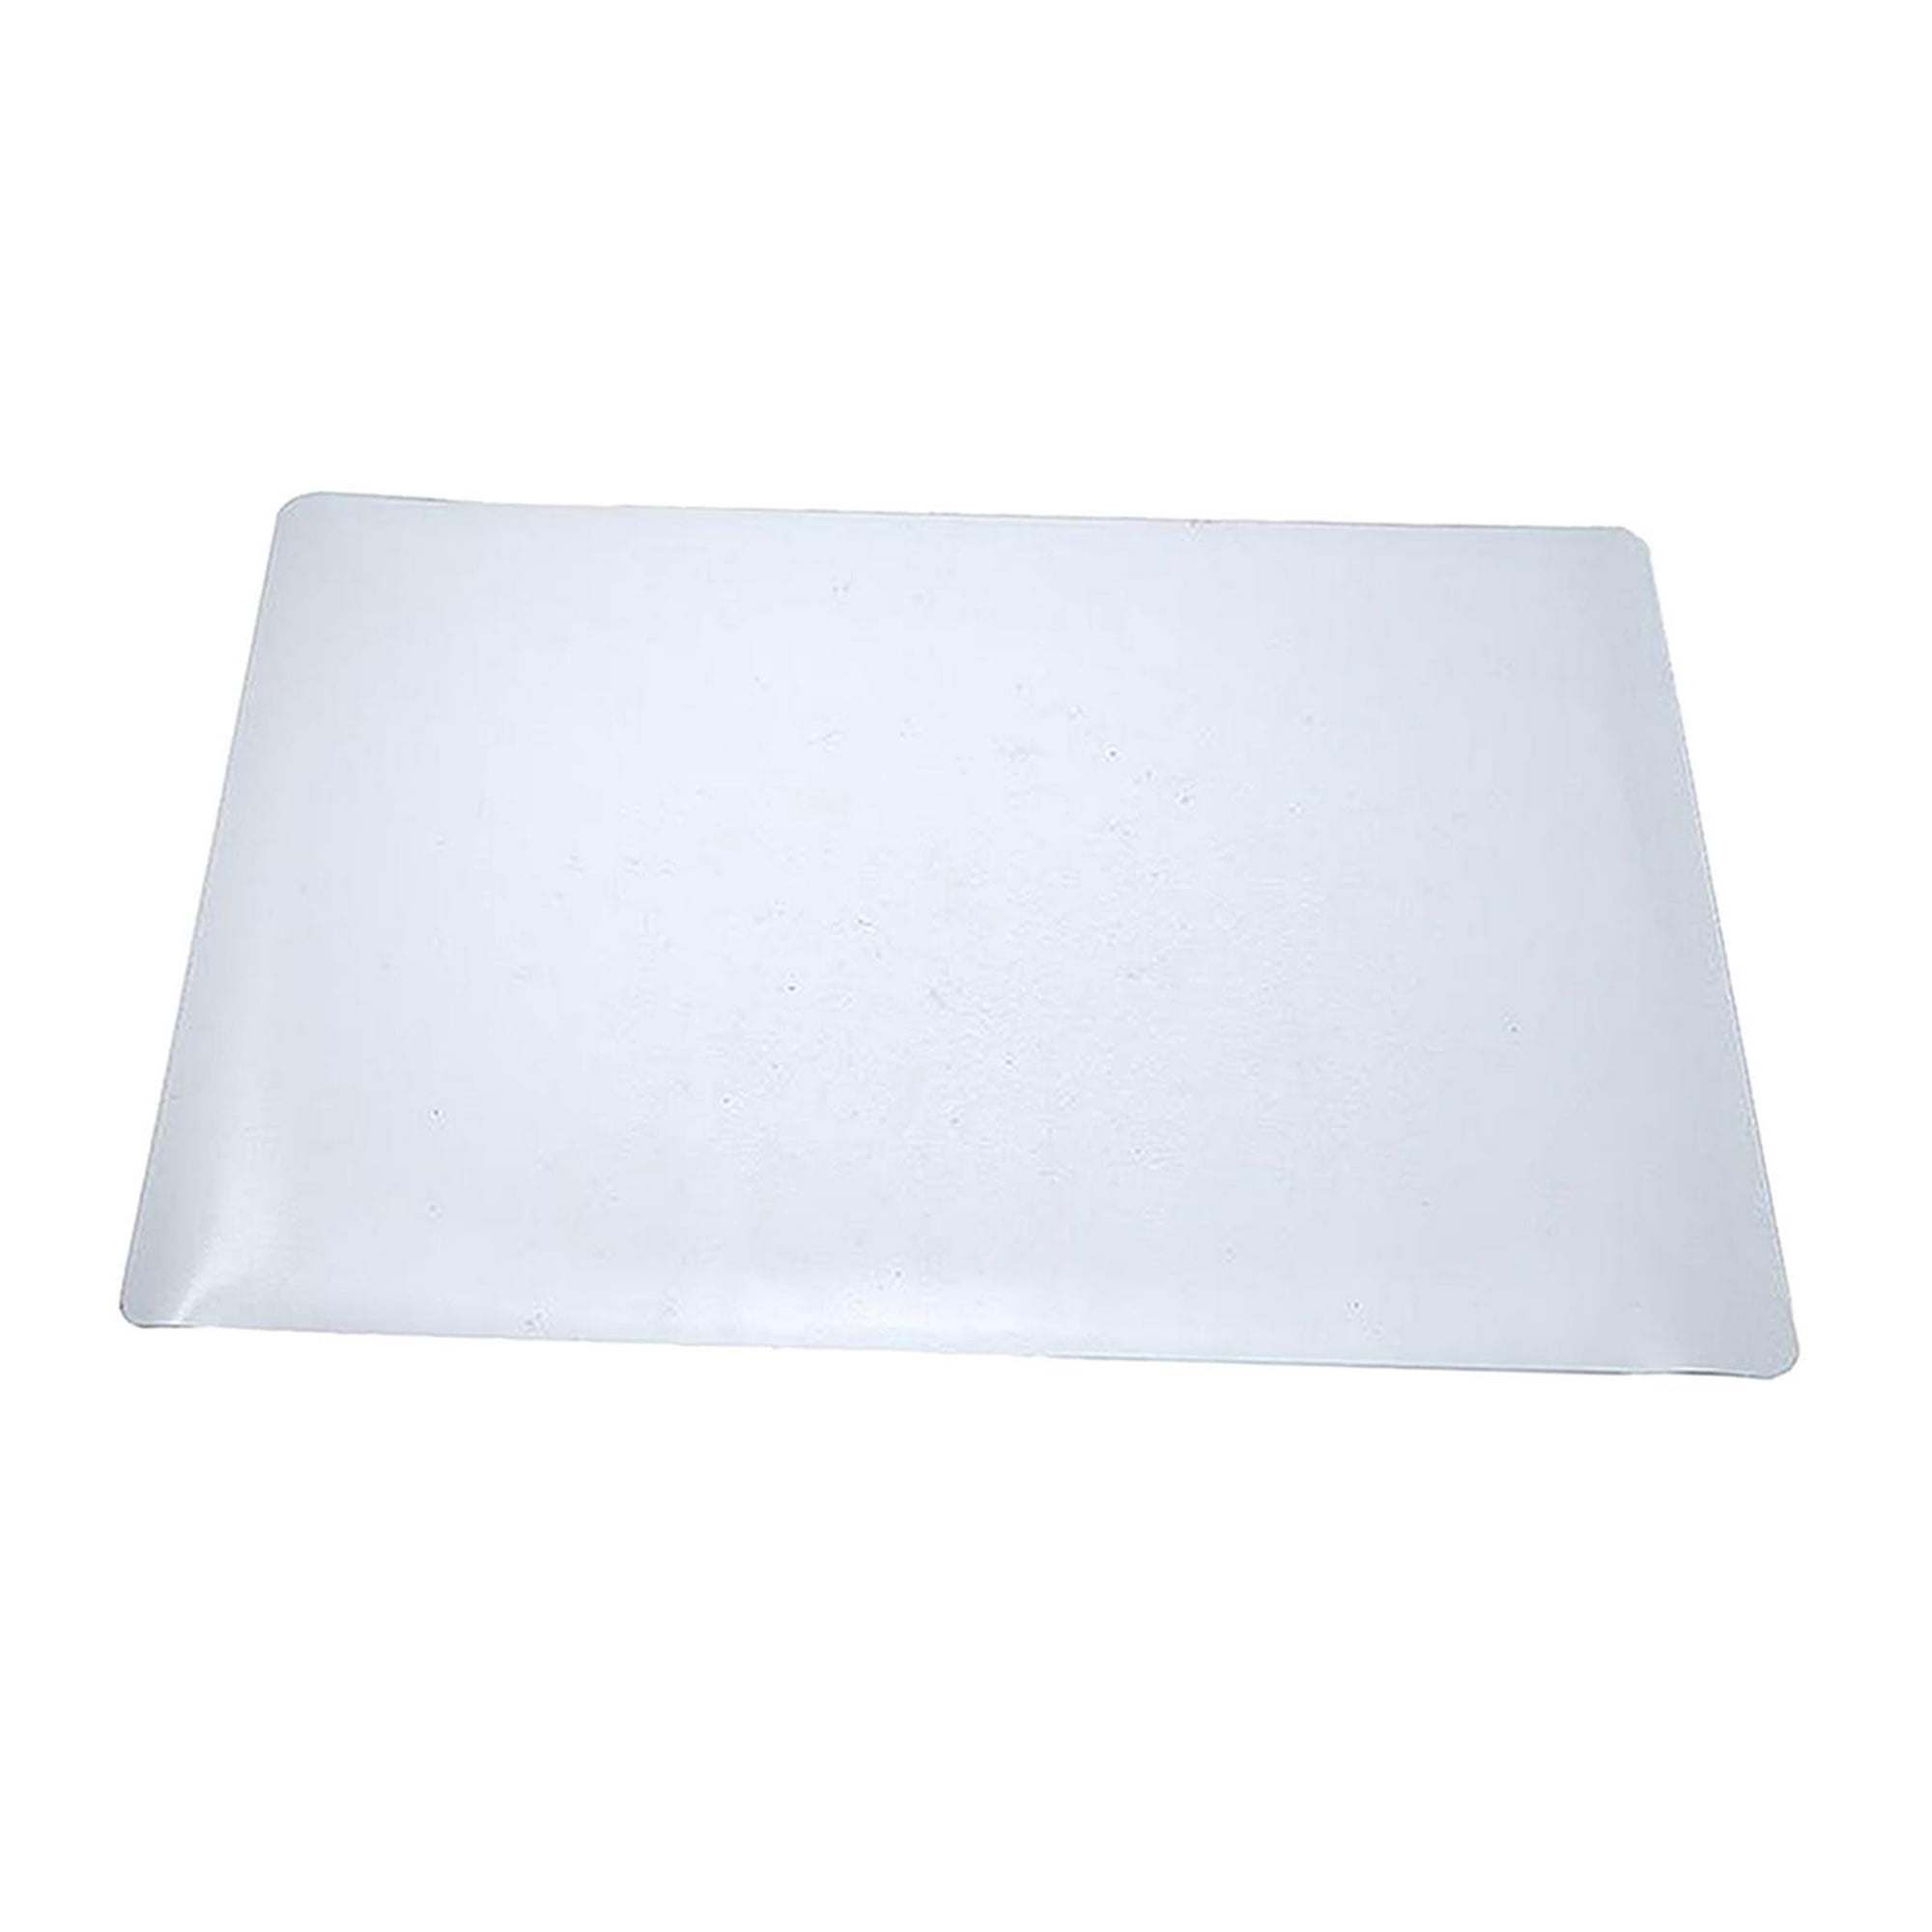  Alfombra de PVC transparente para el suelo, protector de  alfombra transparente para el escritorio del comedor, alfombrilla para  silla, 0.039 in de grosor, impermeable, antideslizante, alfombra de piso  (color transparente, tamaño